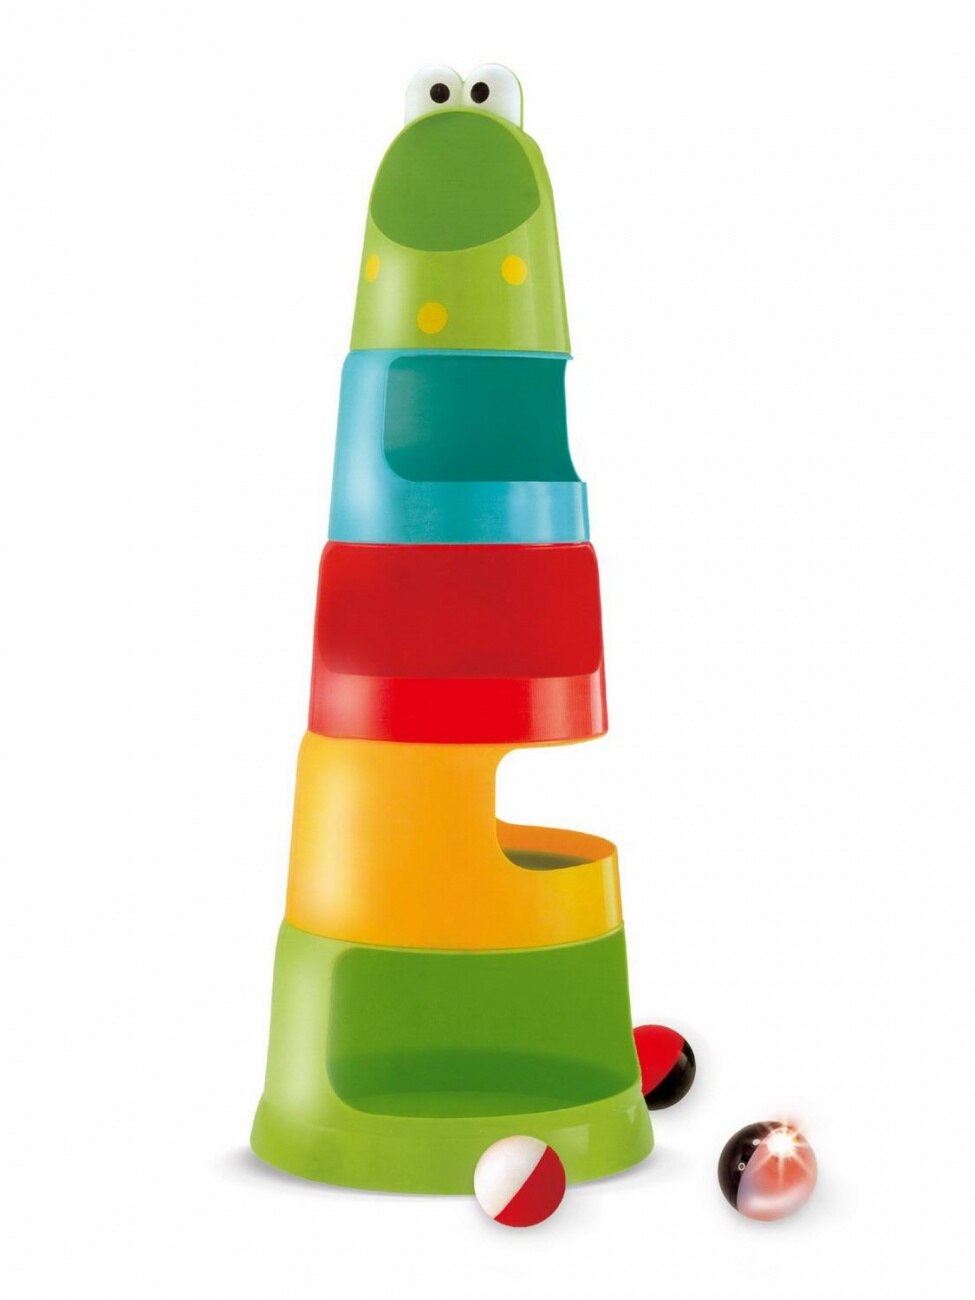 Развивающая игрушка Пирамидка: 3 шарика, один со светом, высота 53 см, 2xAG13, включ. (Вид 1)